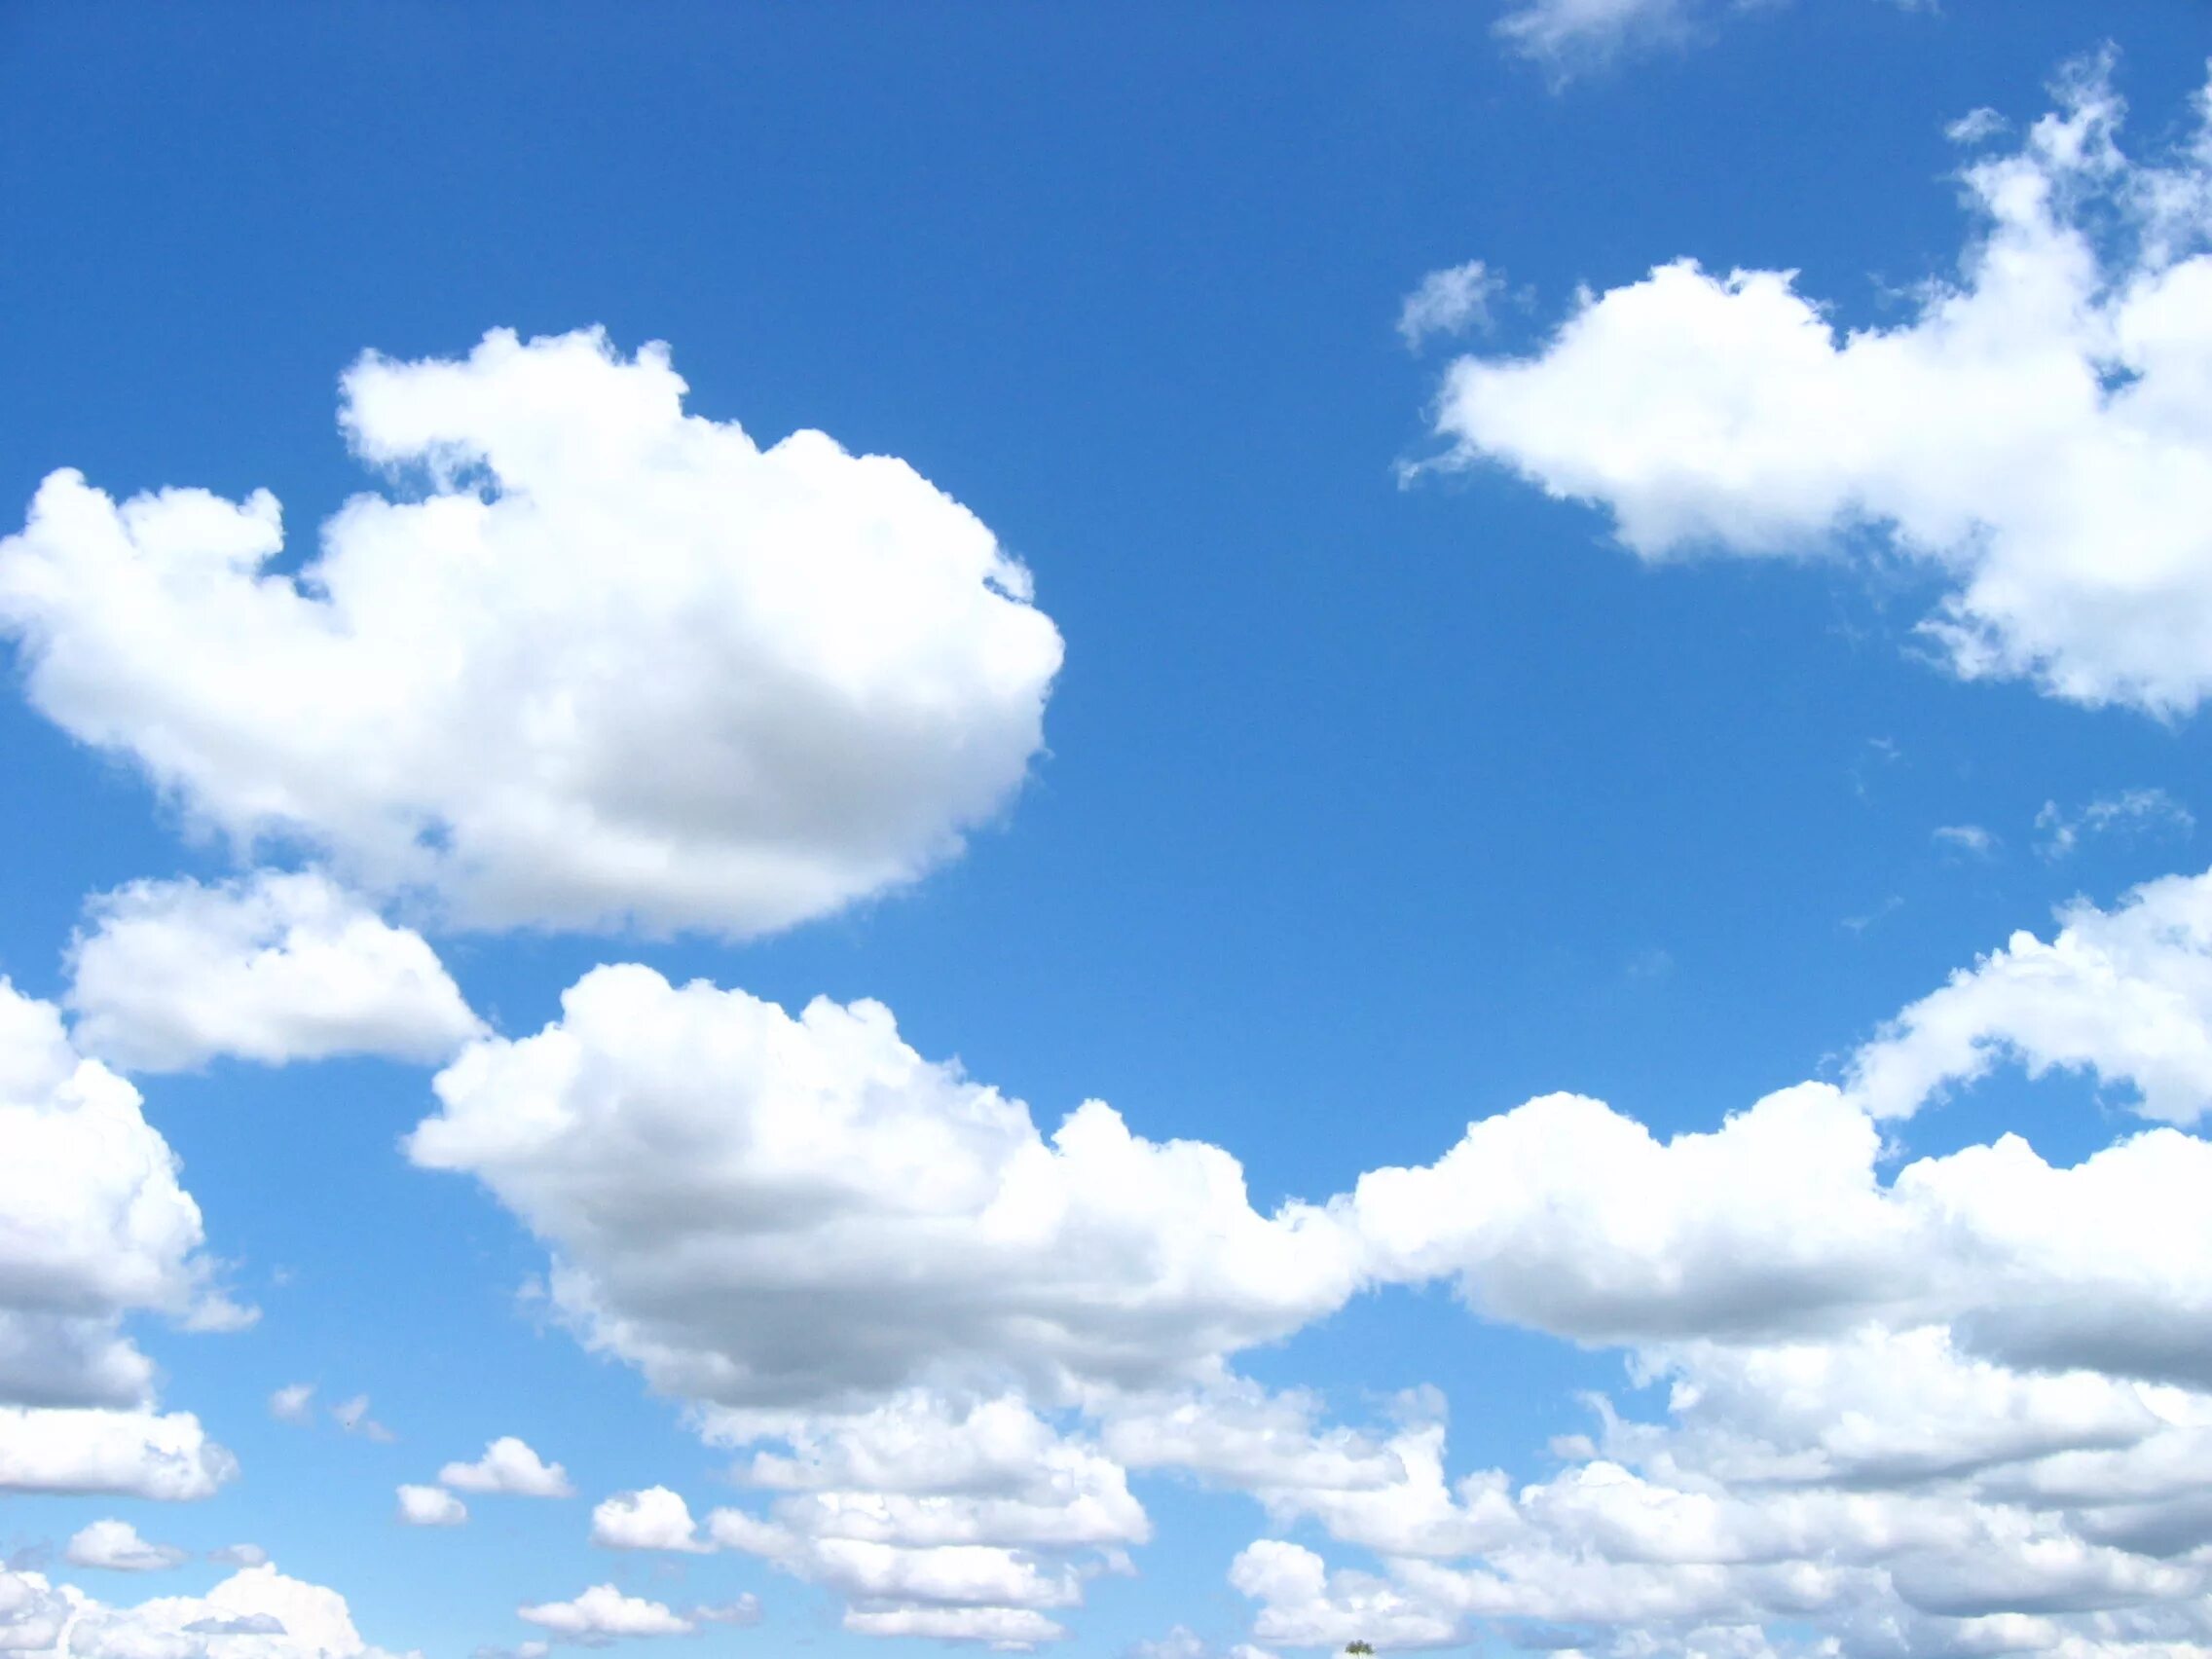 Воздух становится синим. Небо с облаками. Воздух. Воздушное облако. Небо картинка для детей.